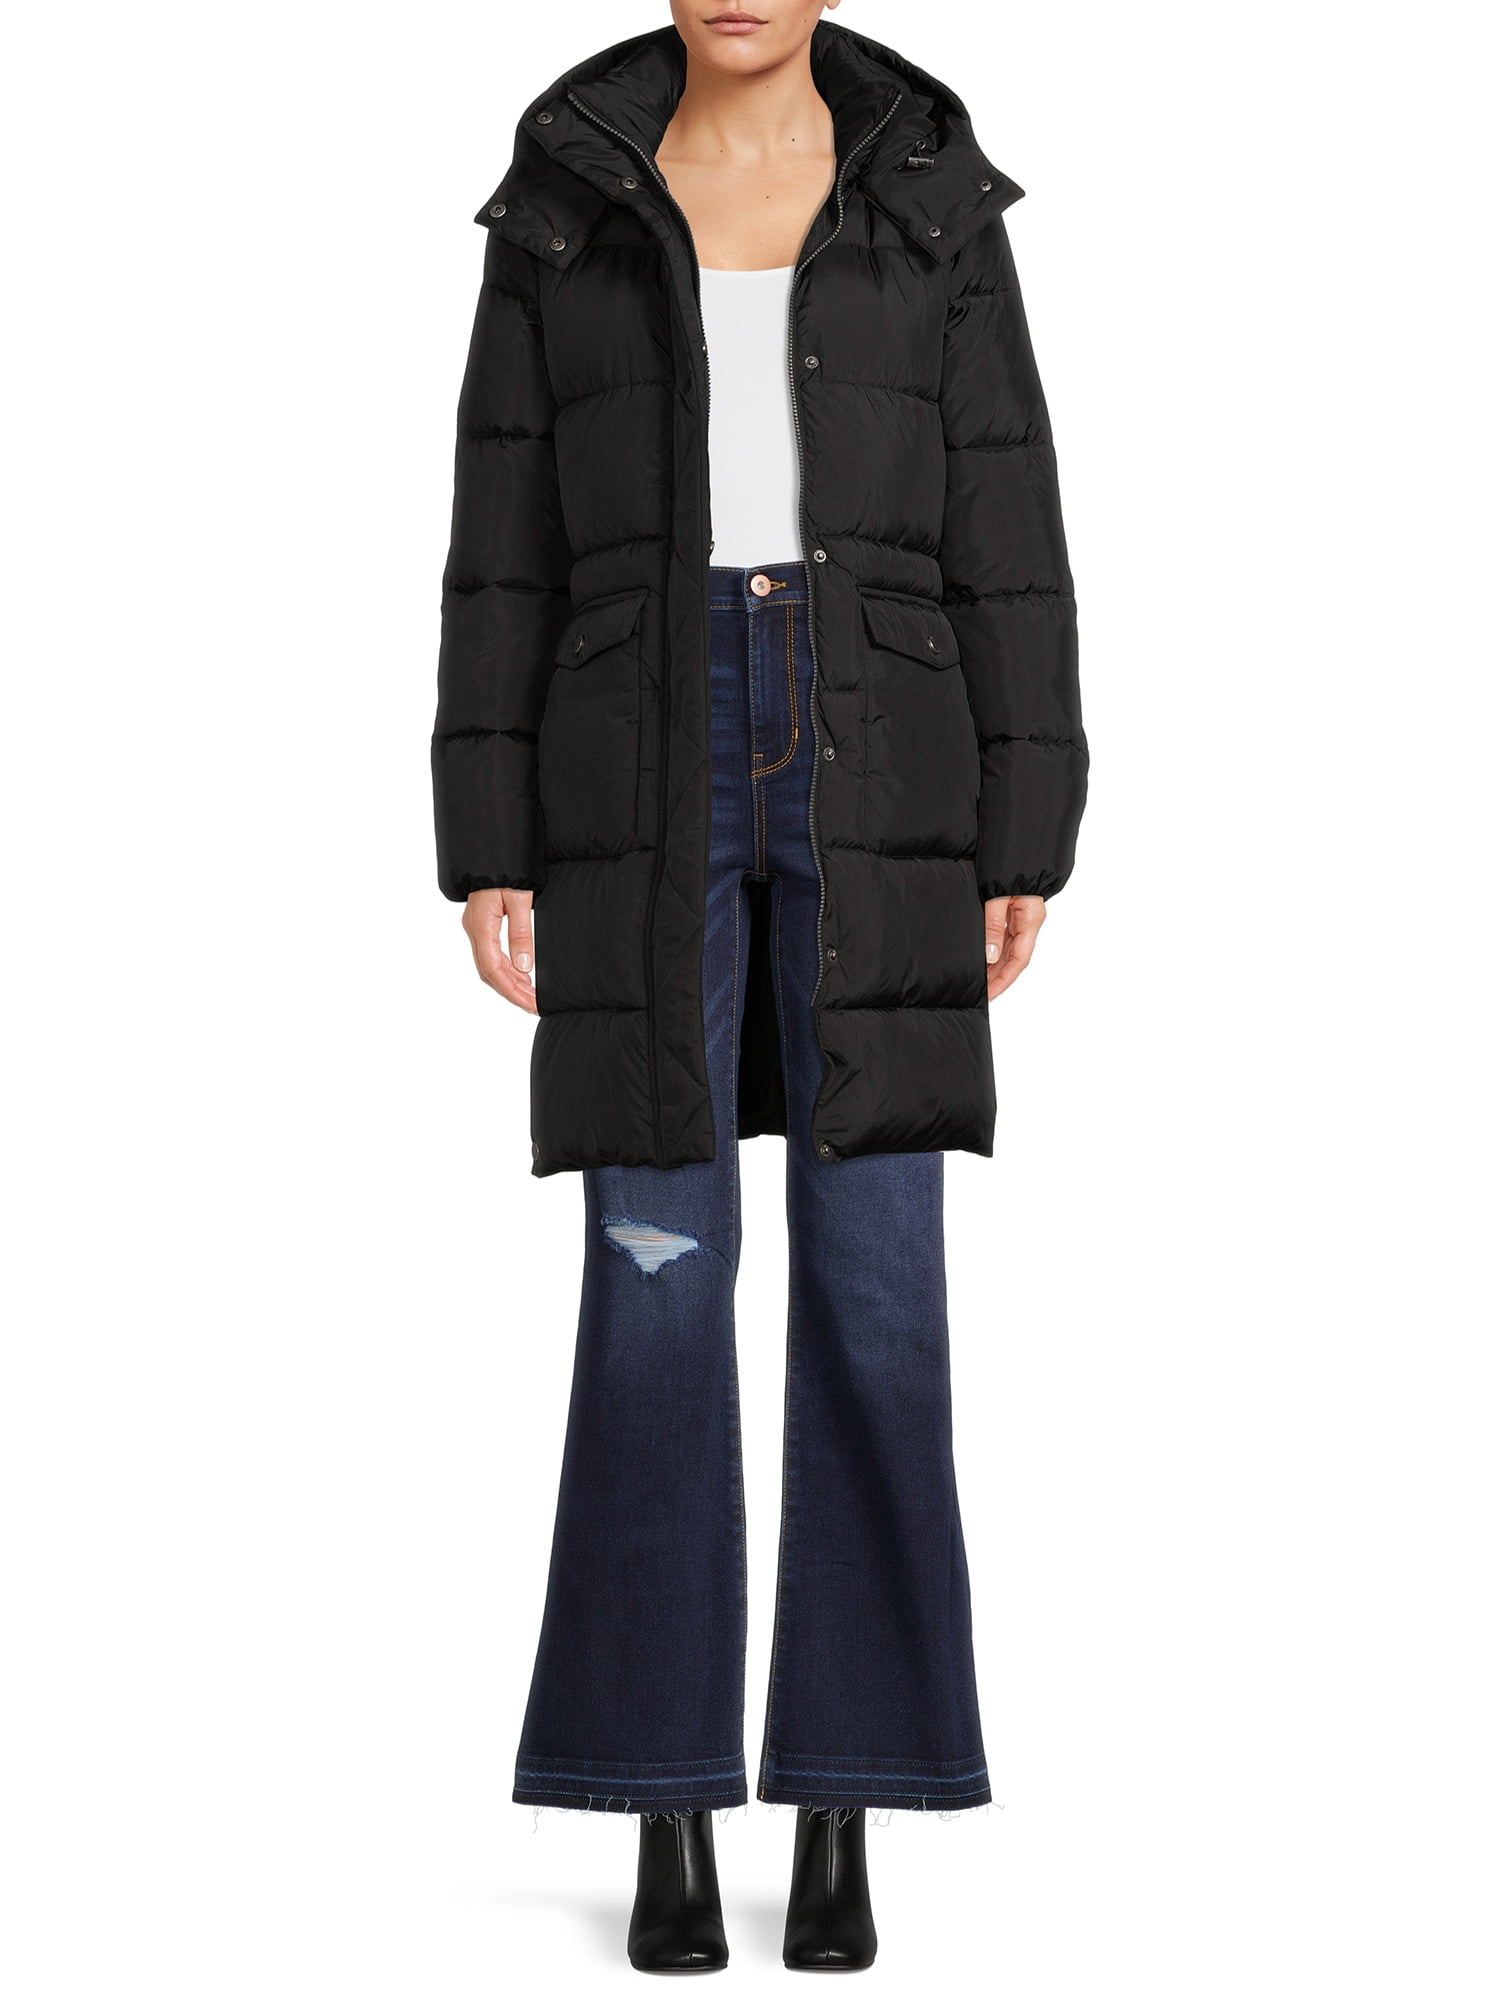 BCBG Paris Women's Long Puffer Coat with Hood - Walmart.com